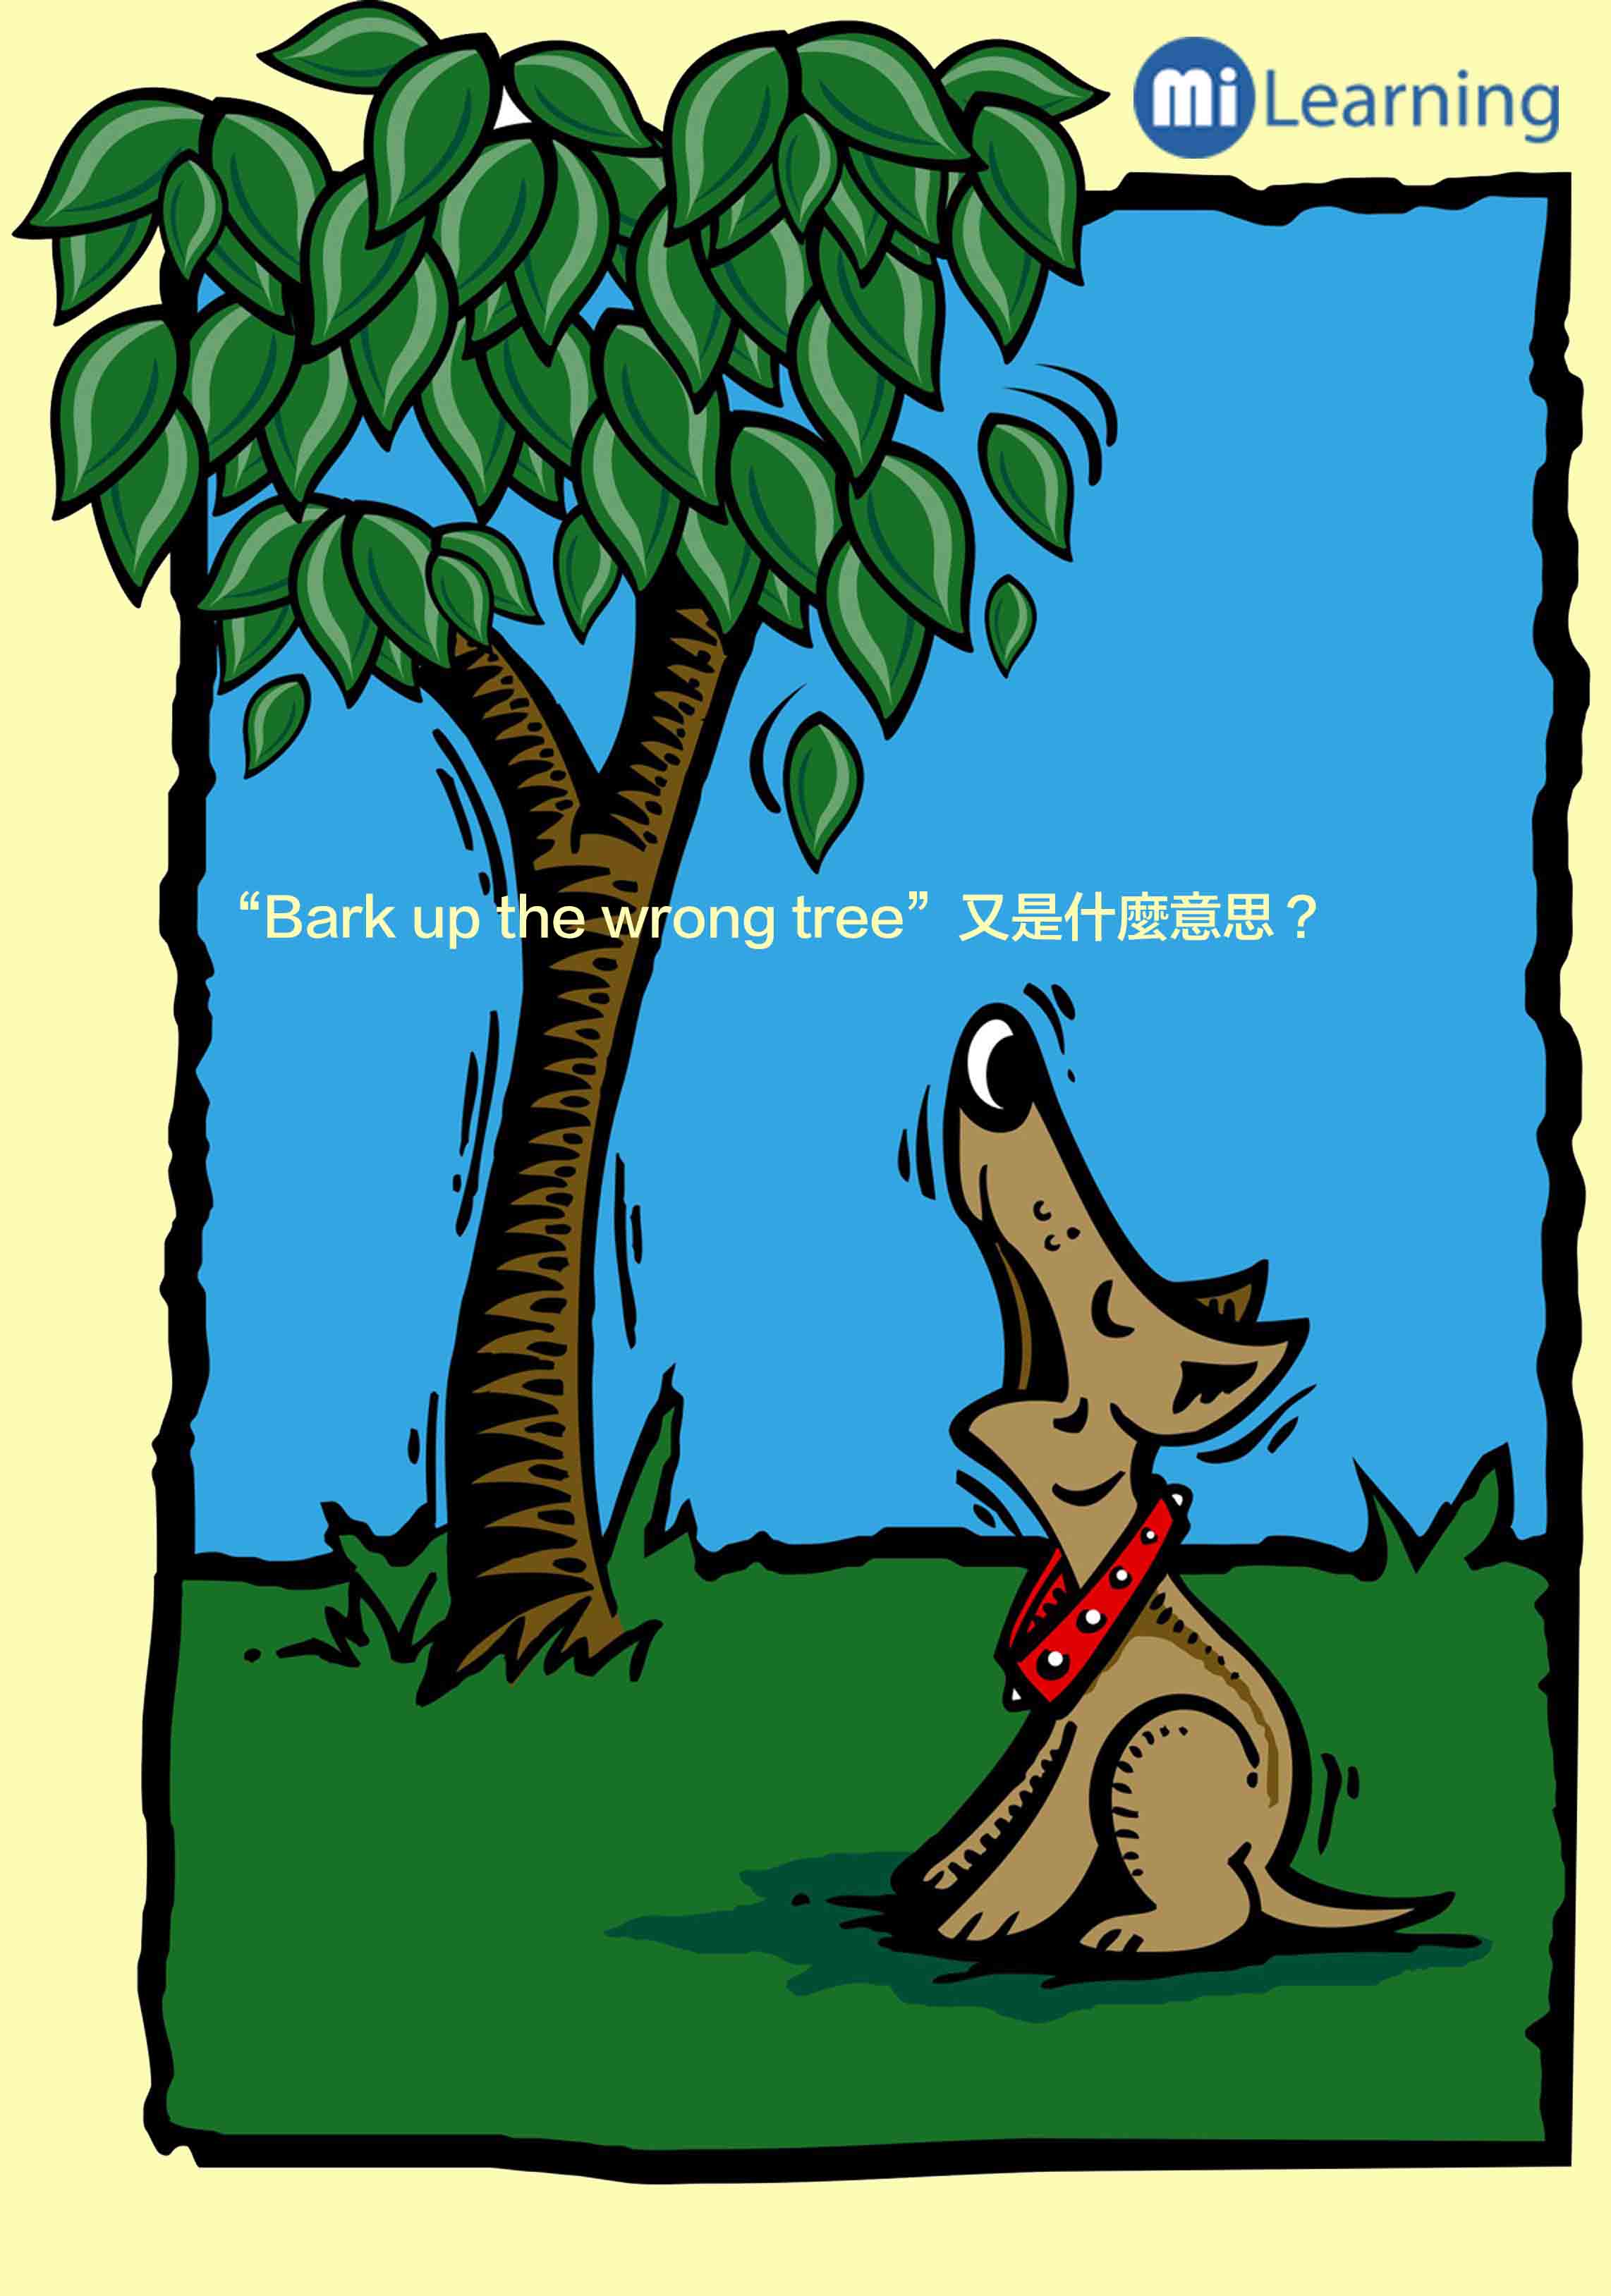 Bark up the wrong tree 是什麼意思呢？